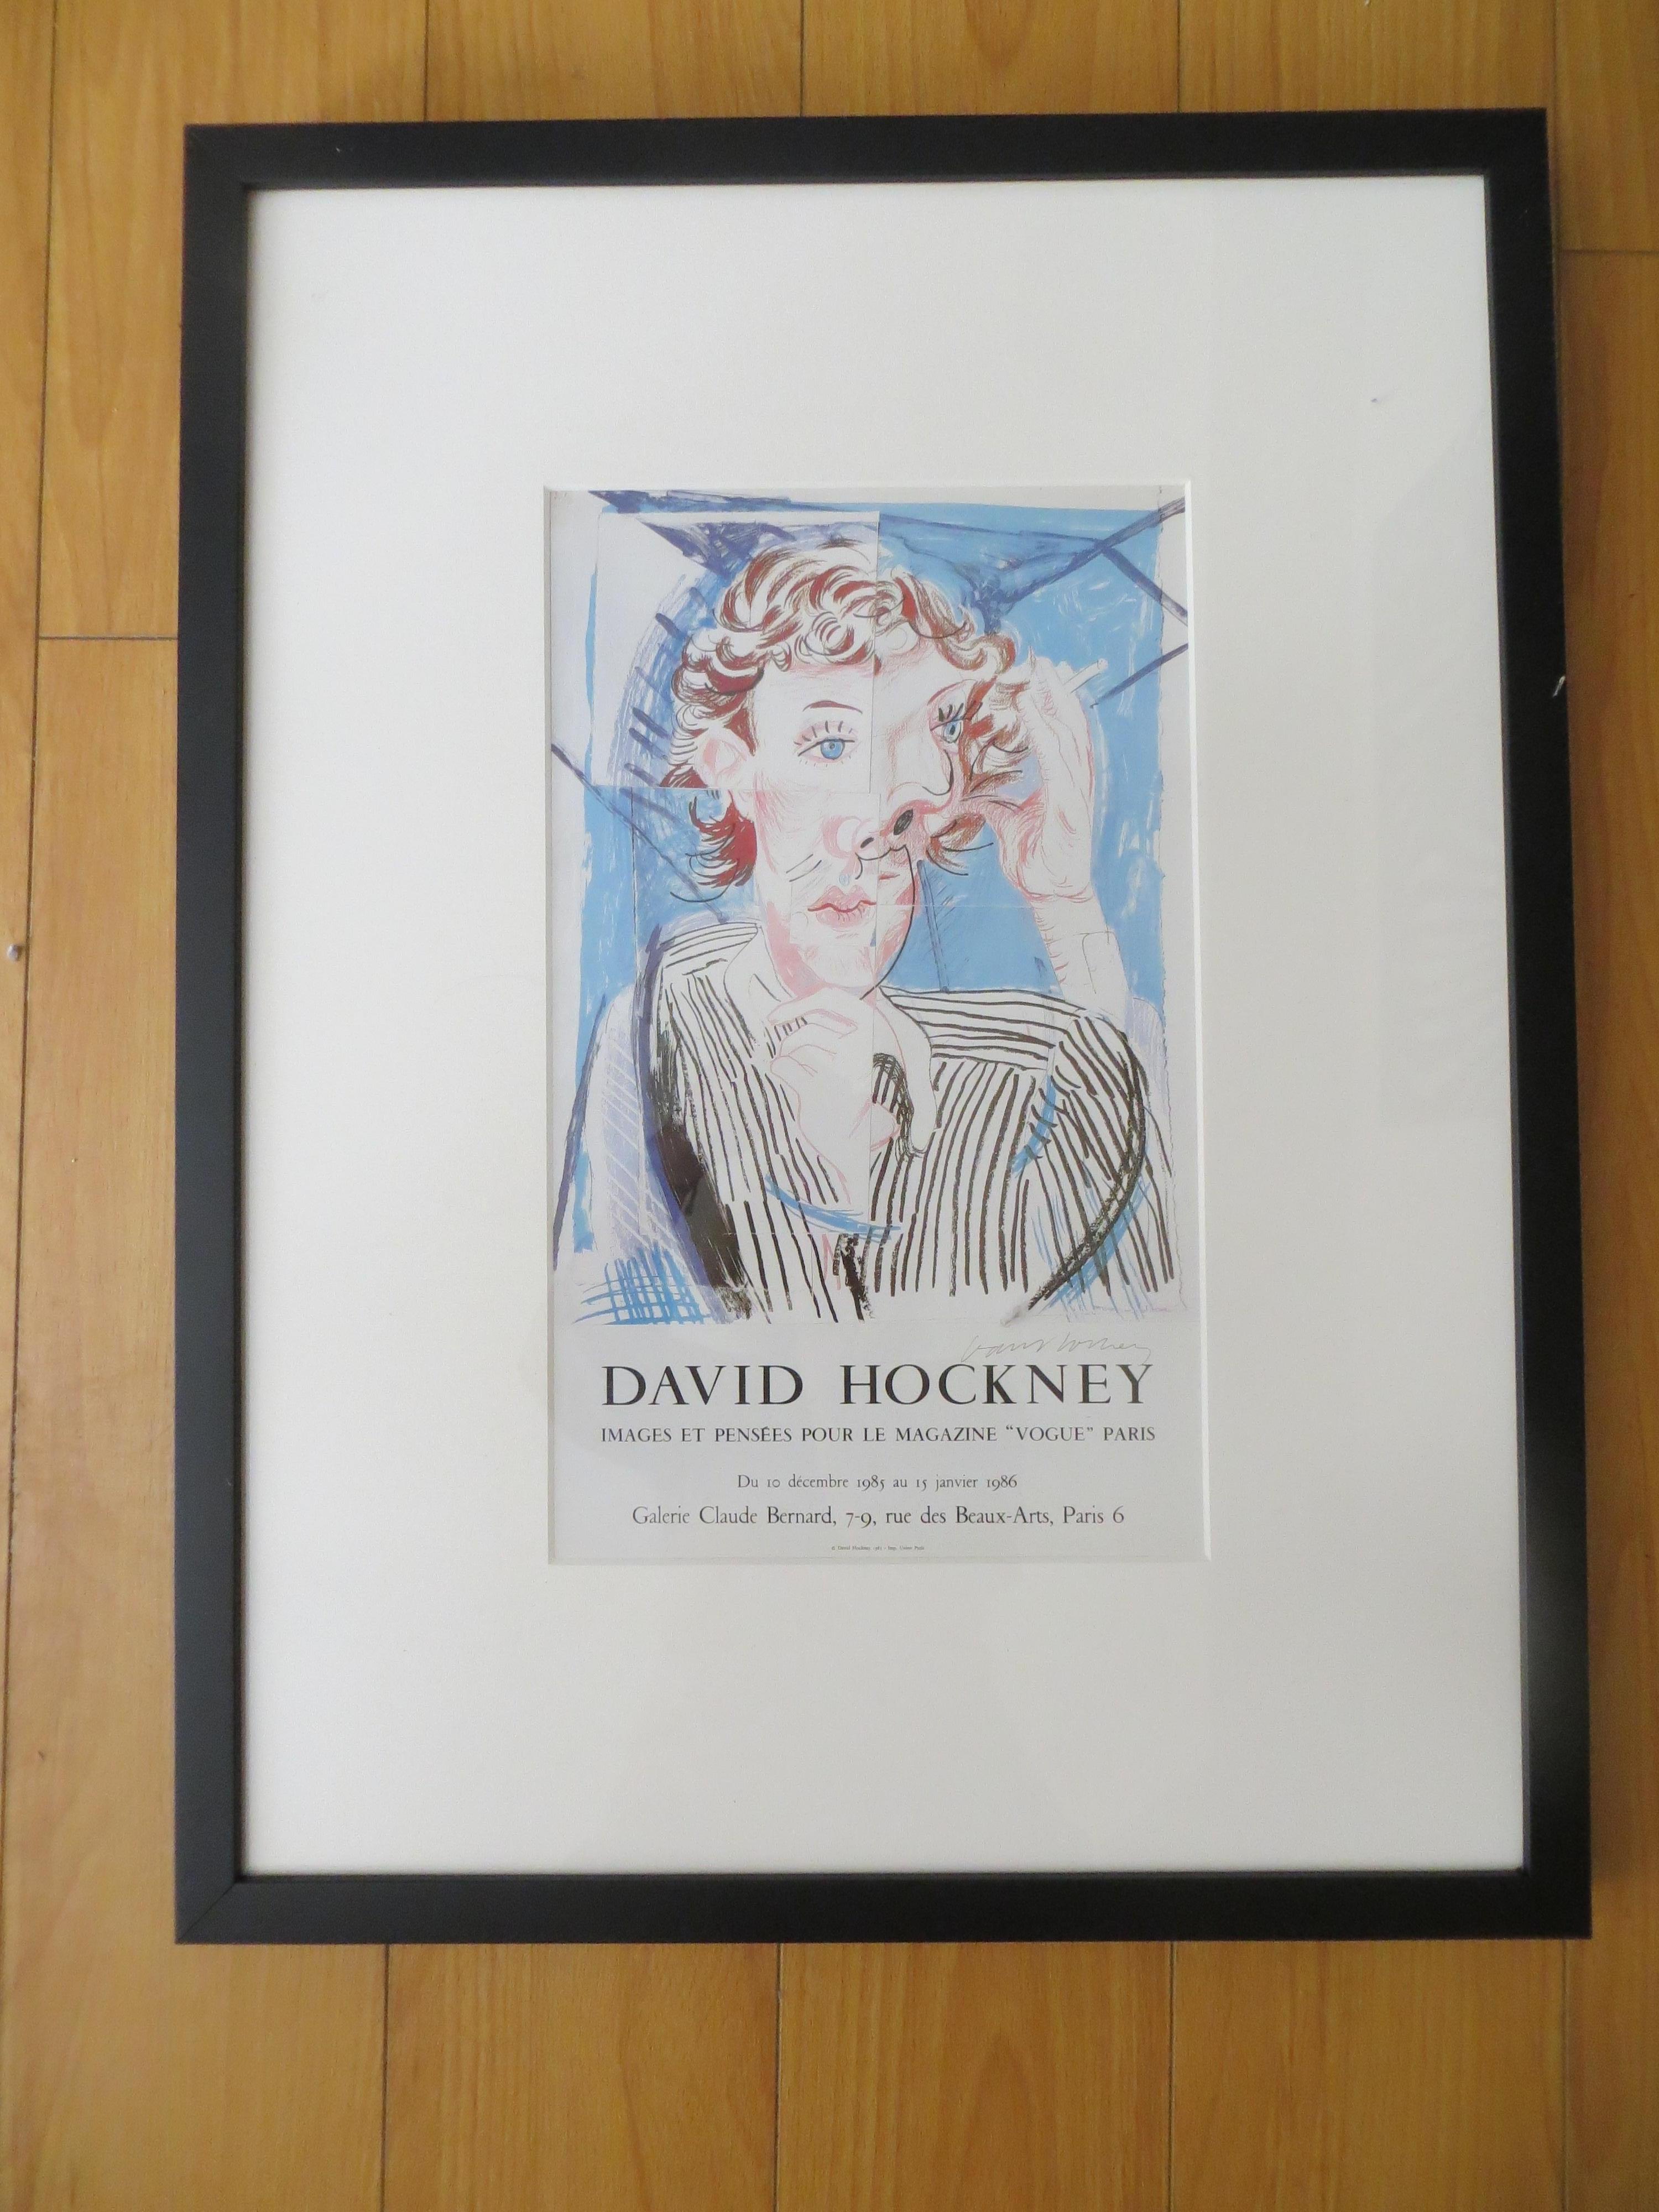 (after) David Hockney Figurative Print - David Hockney Vintage 1985, Pop Art Lithograph Print "Paris, Vogue" Framed